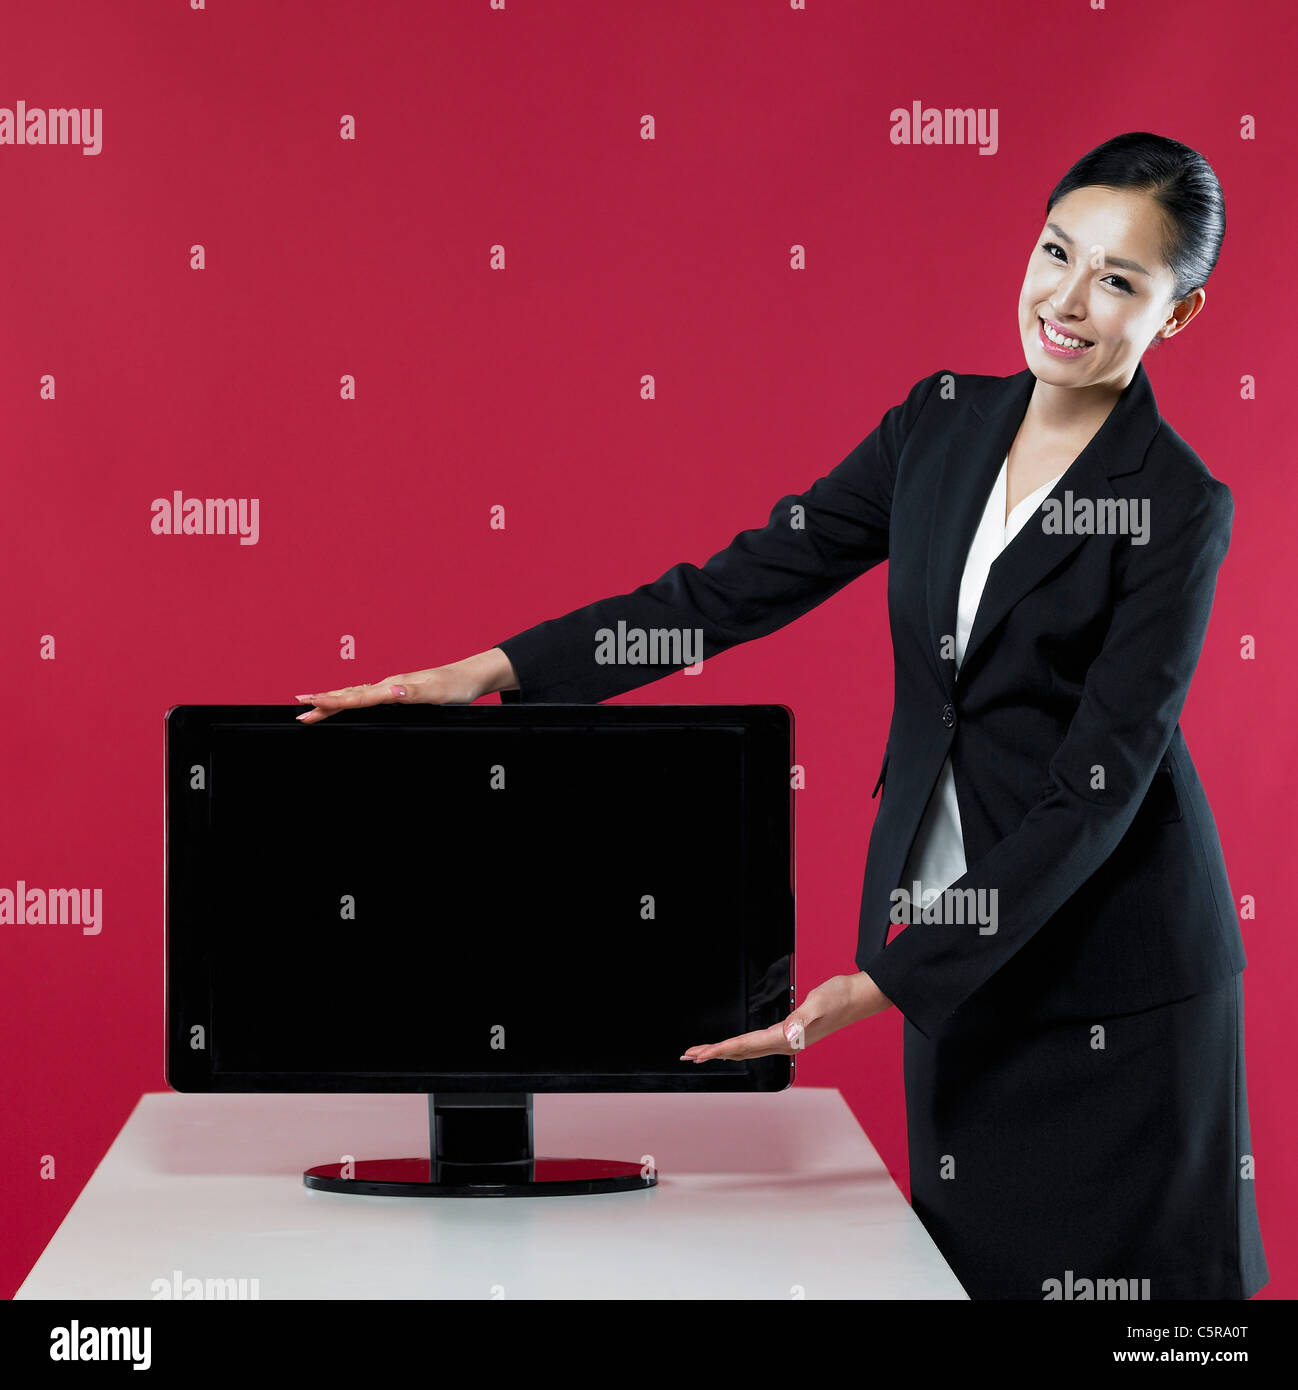 Una donna introducendo un monitor Foto Stock